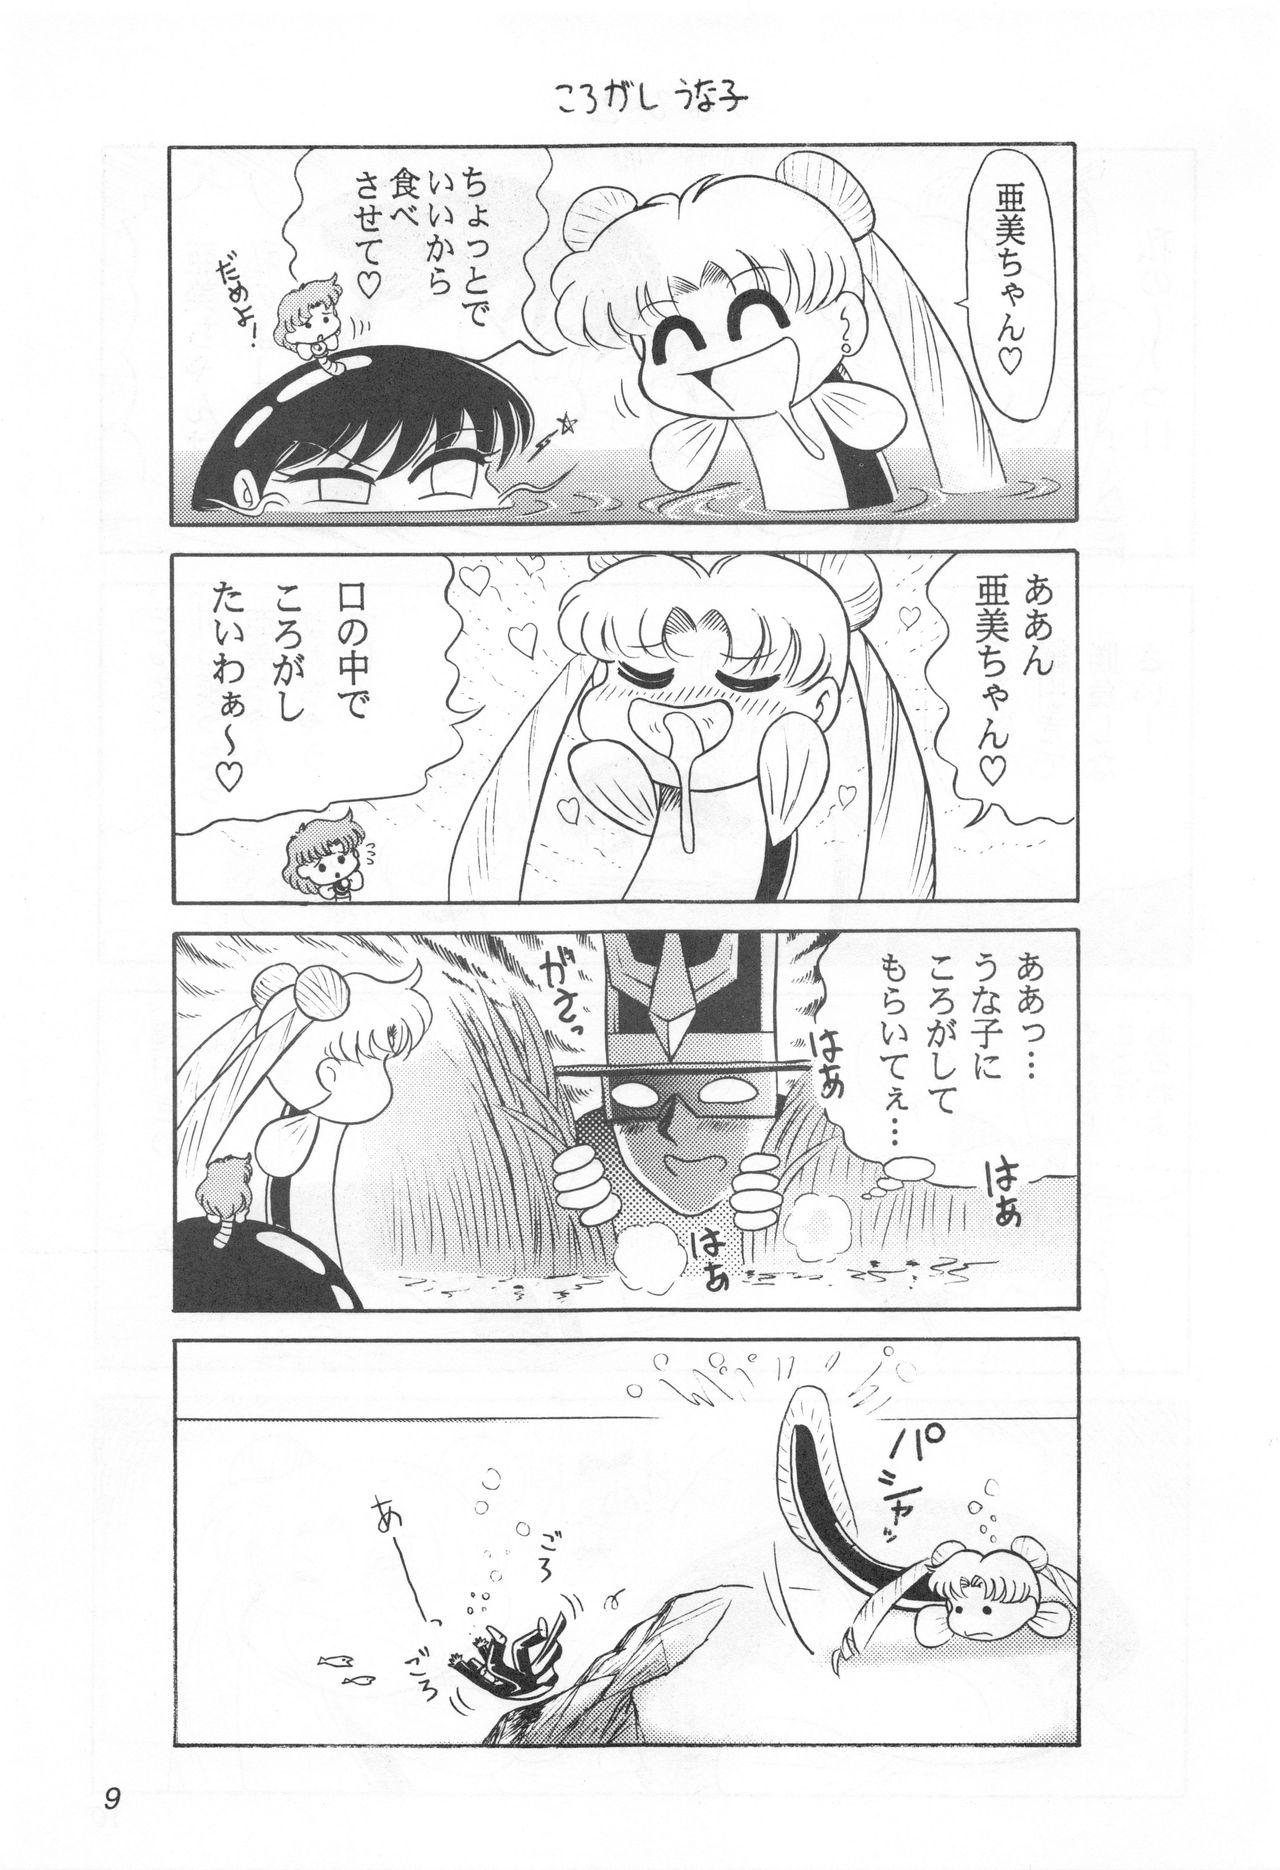 Masturbate Mimizu no Ami-chan Vol. 2 - Sailor moon Ecuador - Page 8